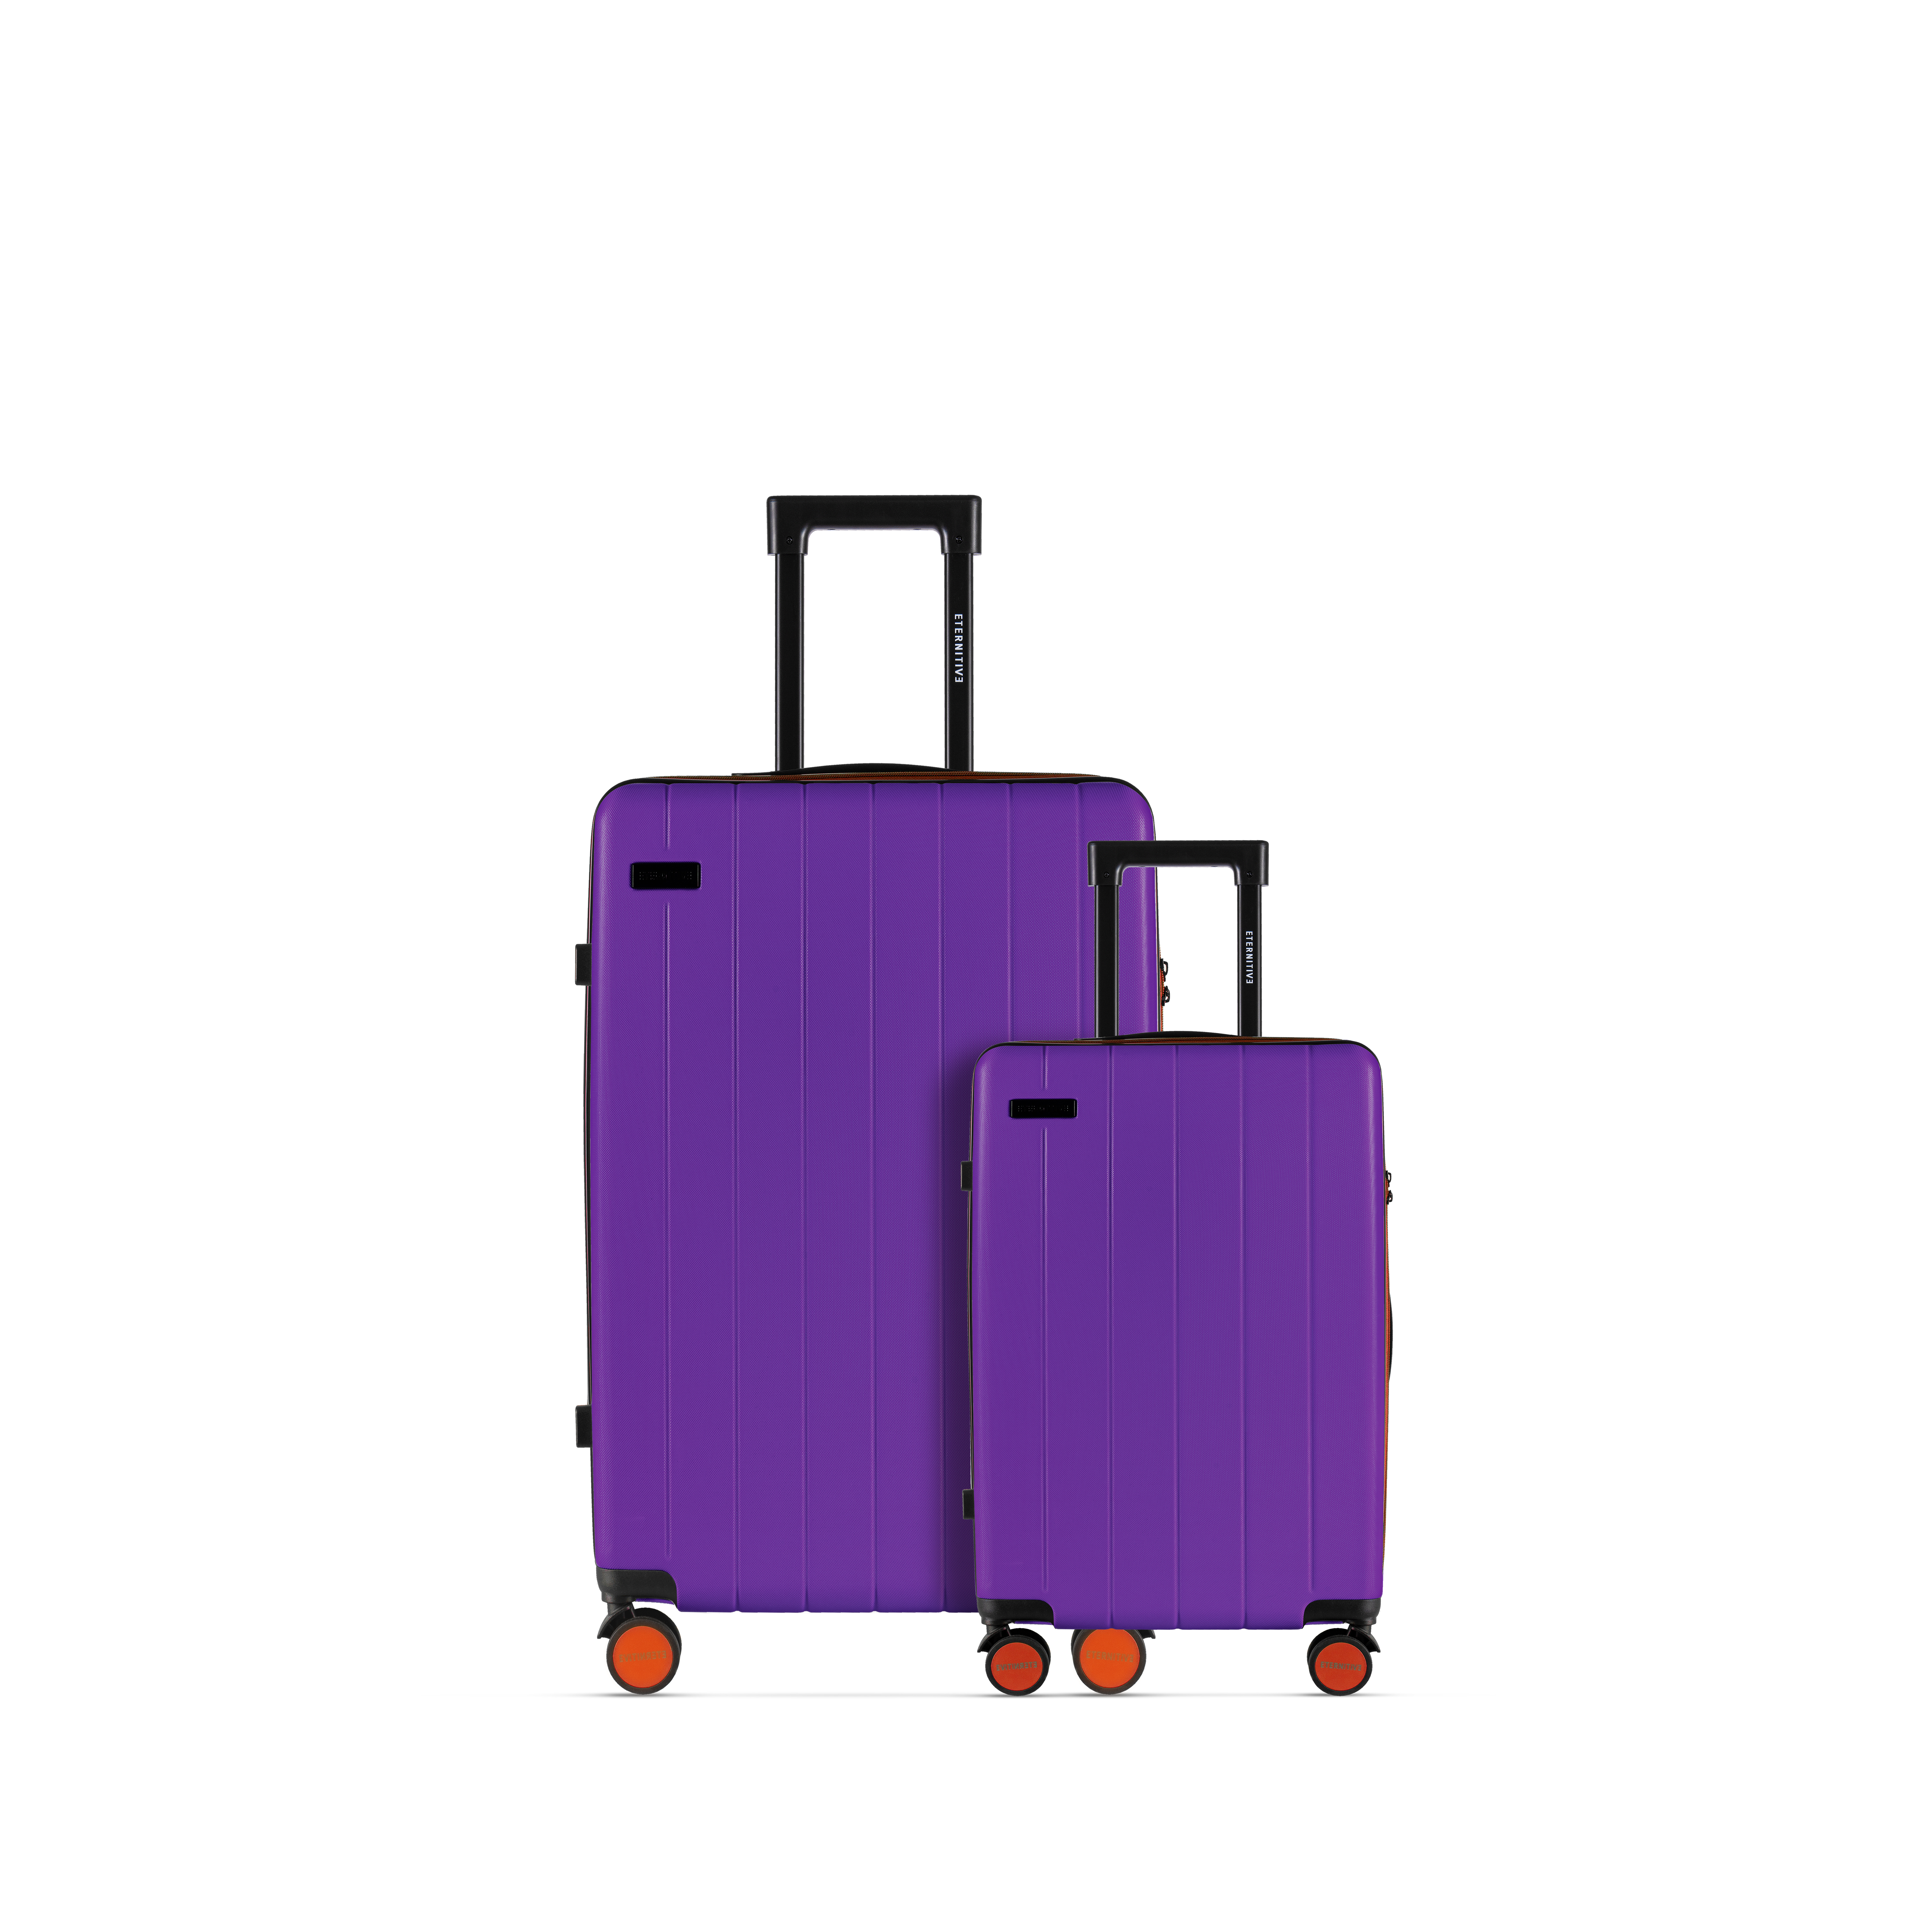 JOY ensemble violet: cabine + grand 